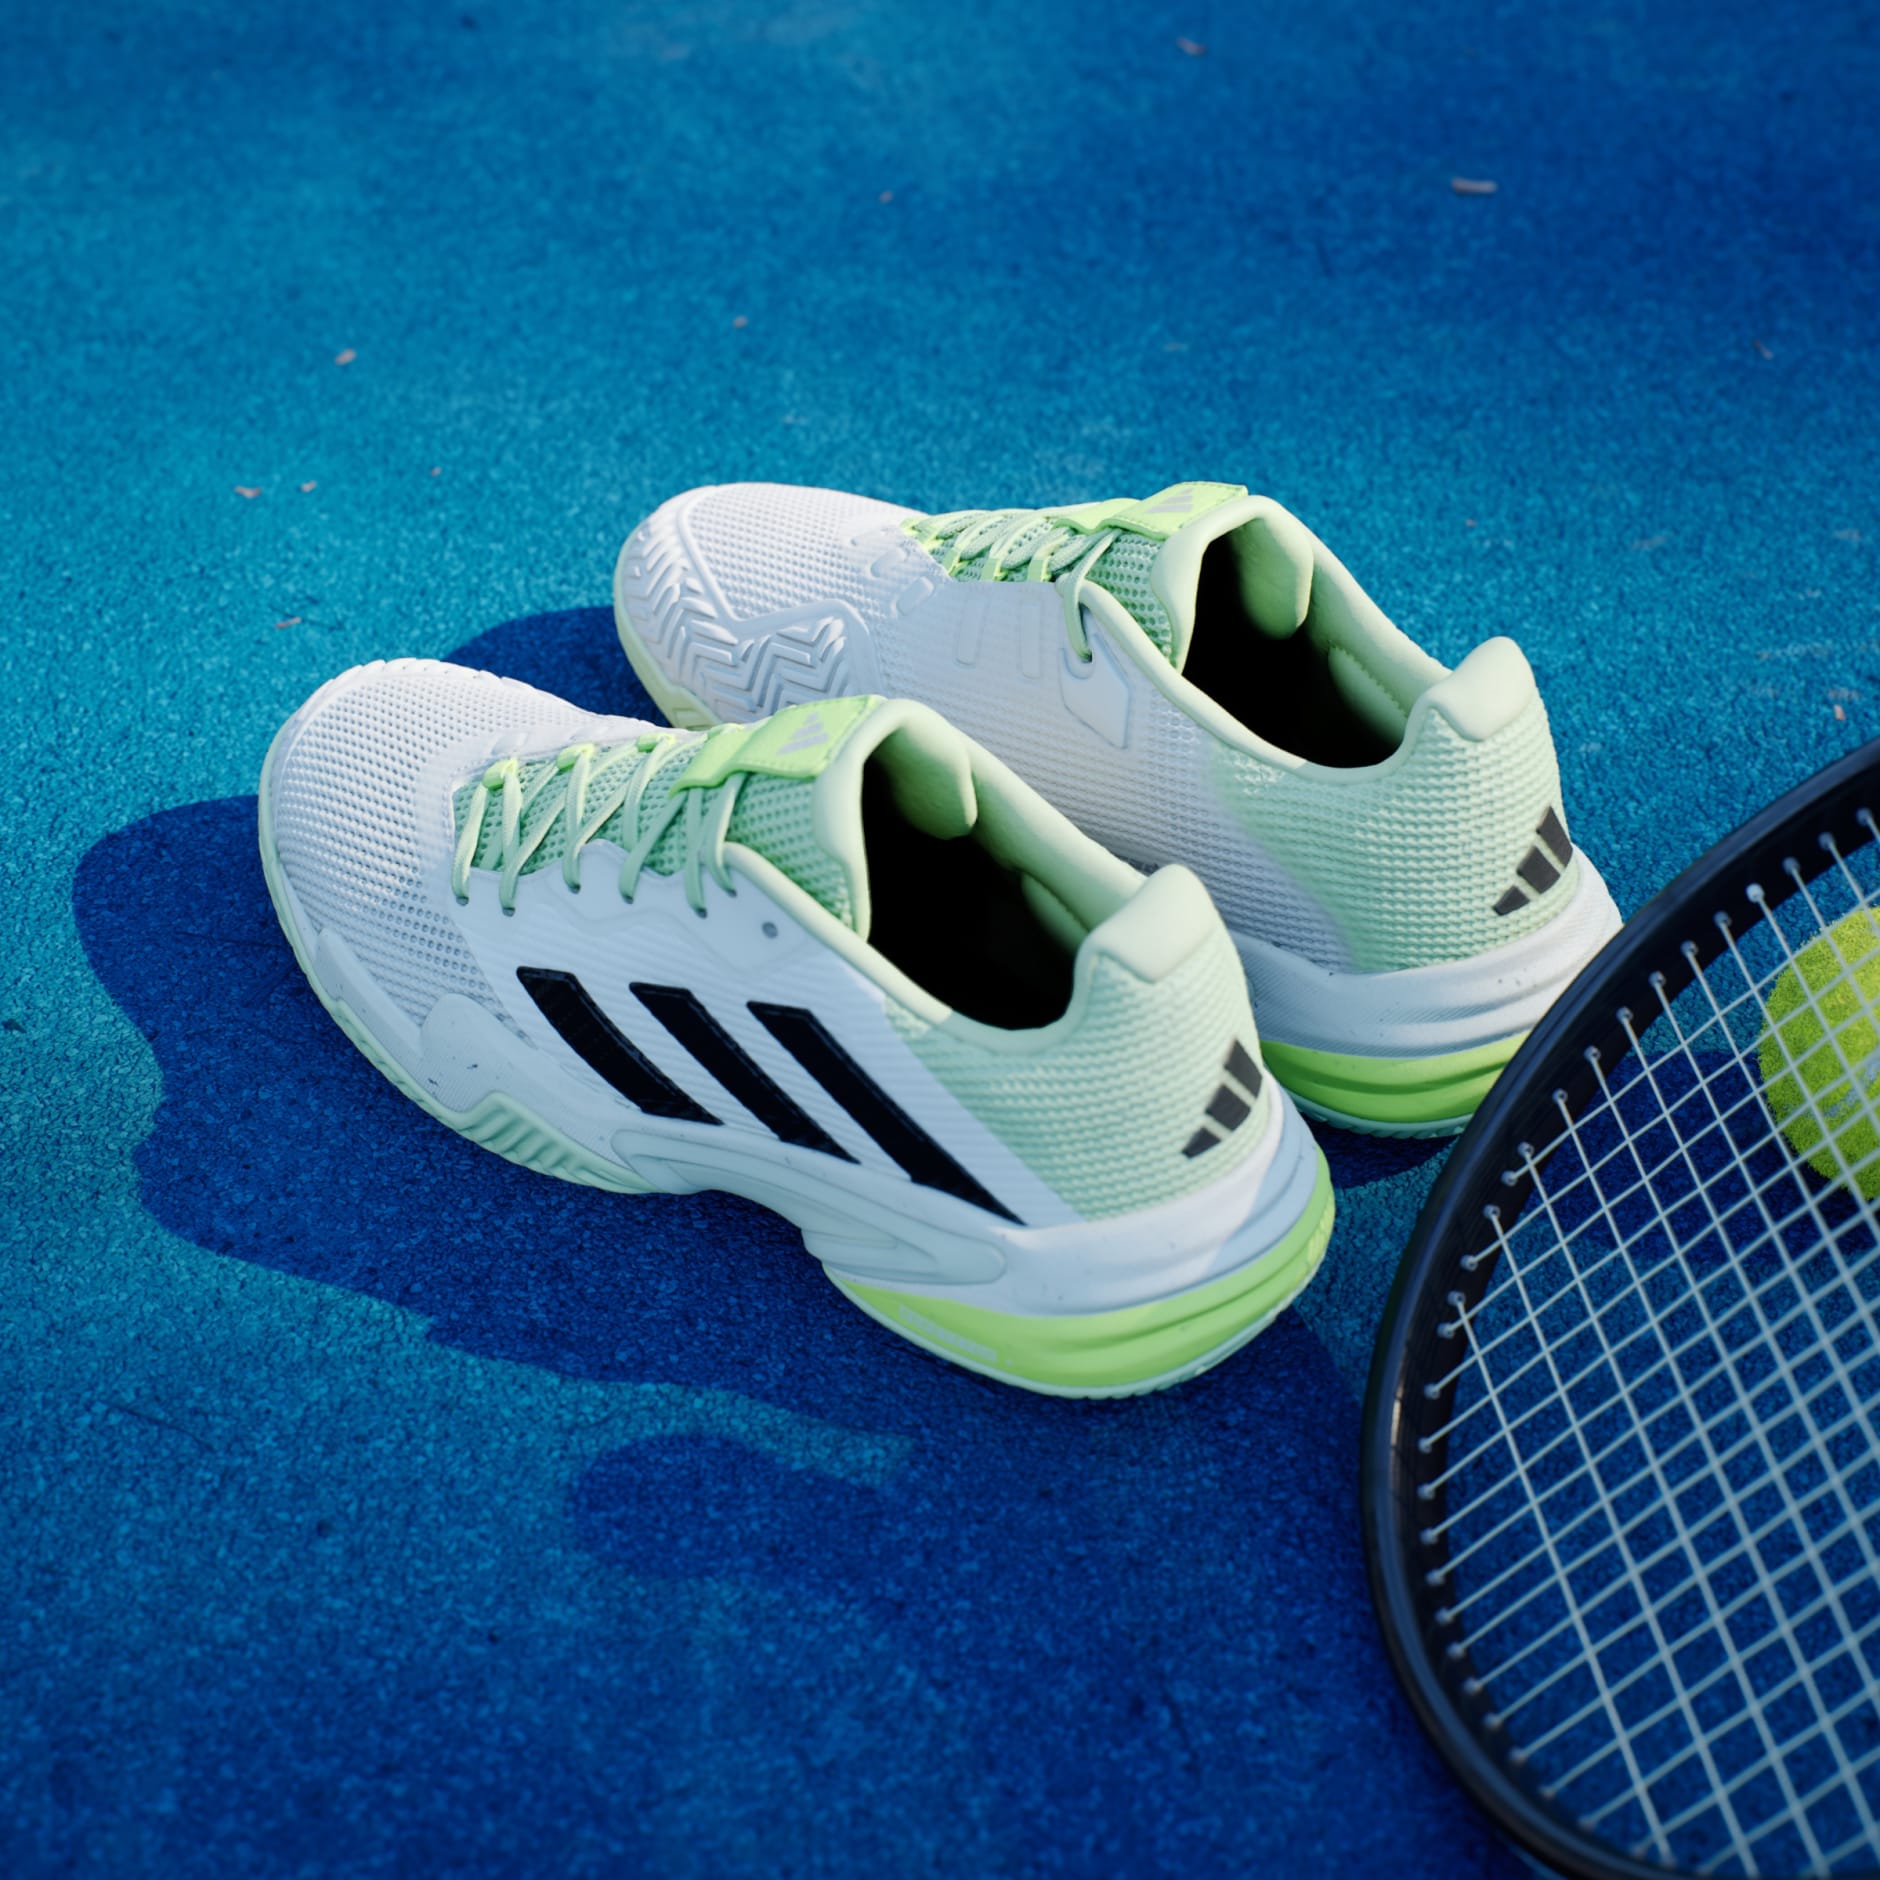 adidas Barricade 13 Tennis Shoes - White | adidas UAE